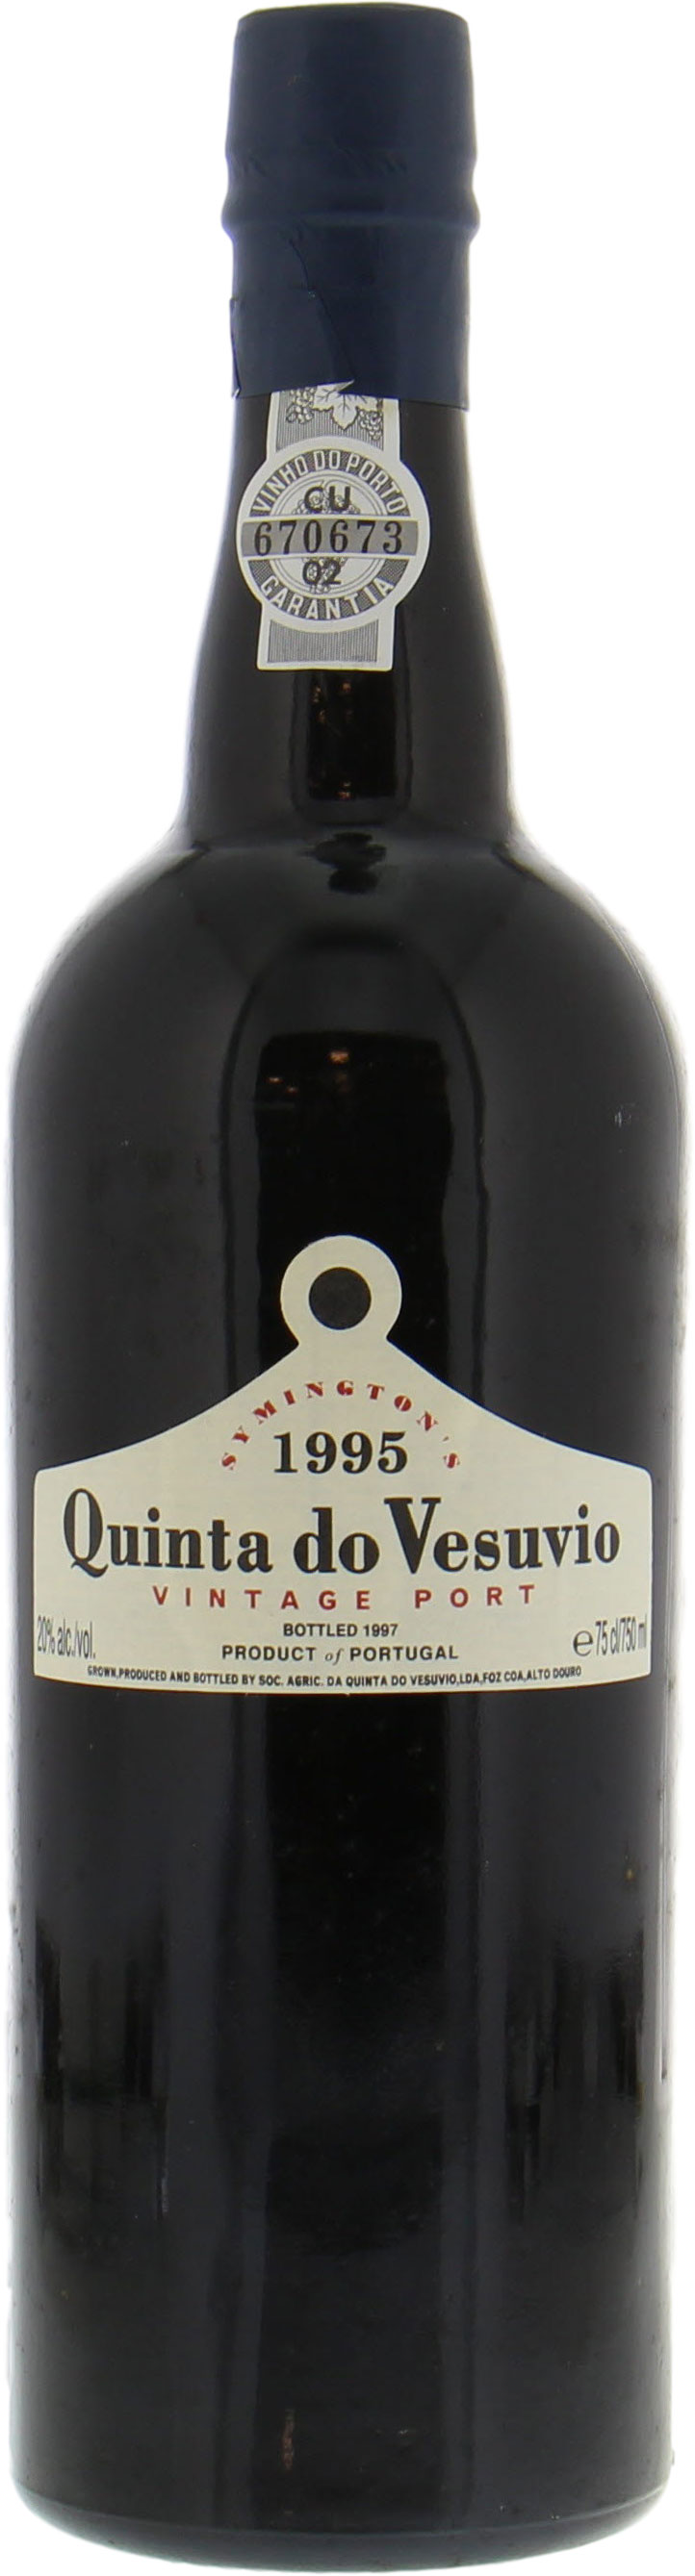 Quinta do Vesuvio - Vintage Port 1995